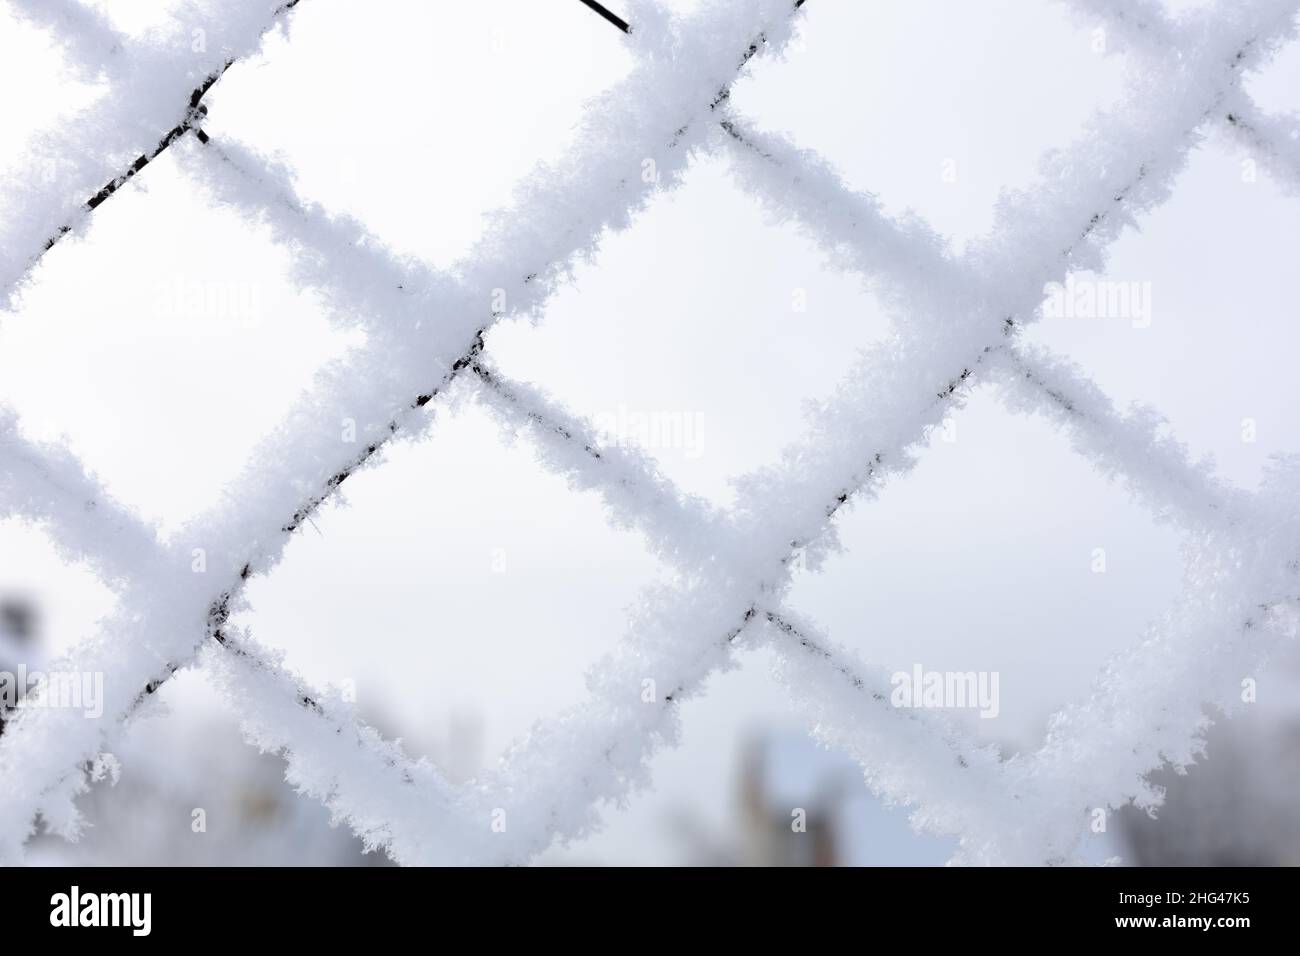 Nahaufnahme eines schneebedeckten Netzes mit hellblauem Himmel im Hintergrund, der den eingeschränkten Bereich einschränkt. Exil nach Sibirien. Proteste mit Menschen, die nach draußen gehen Stockfoto